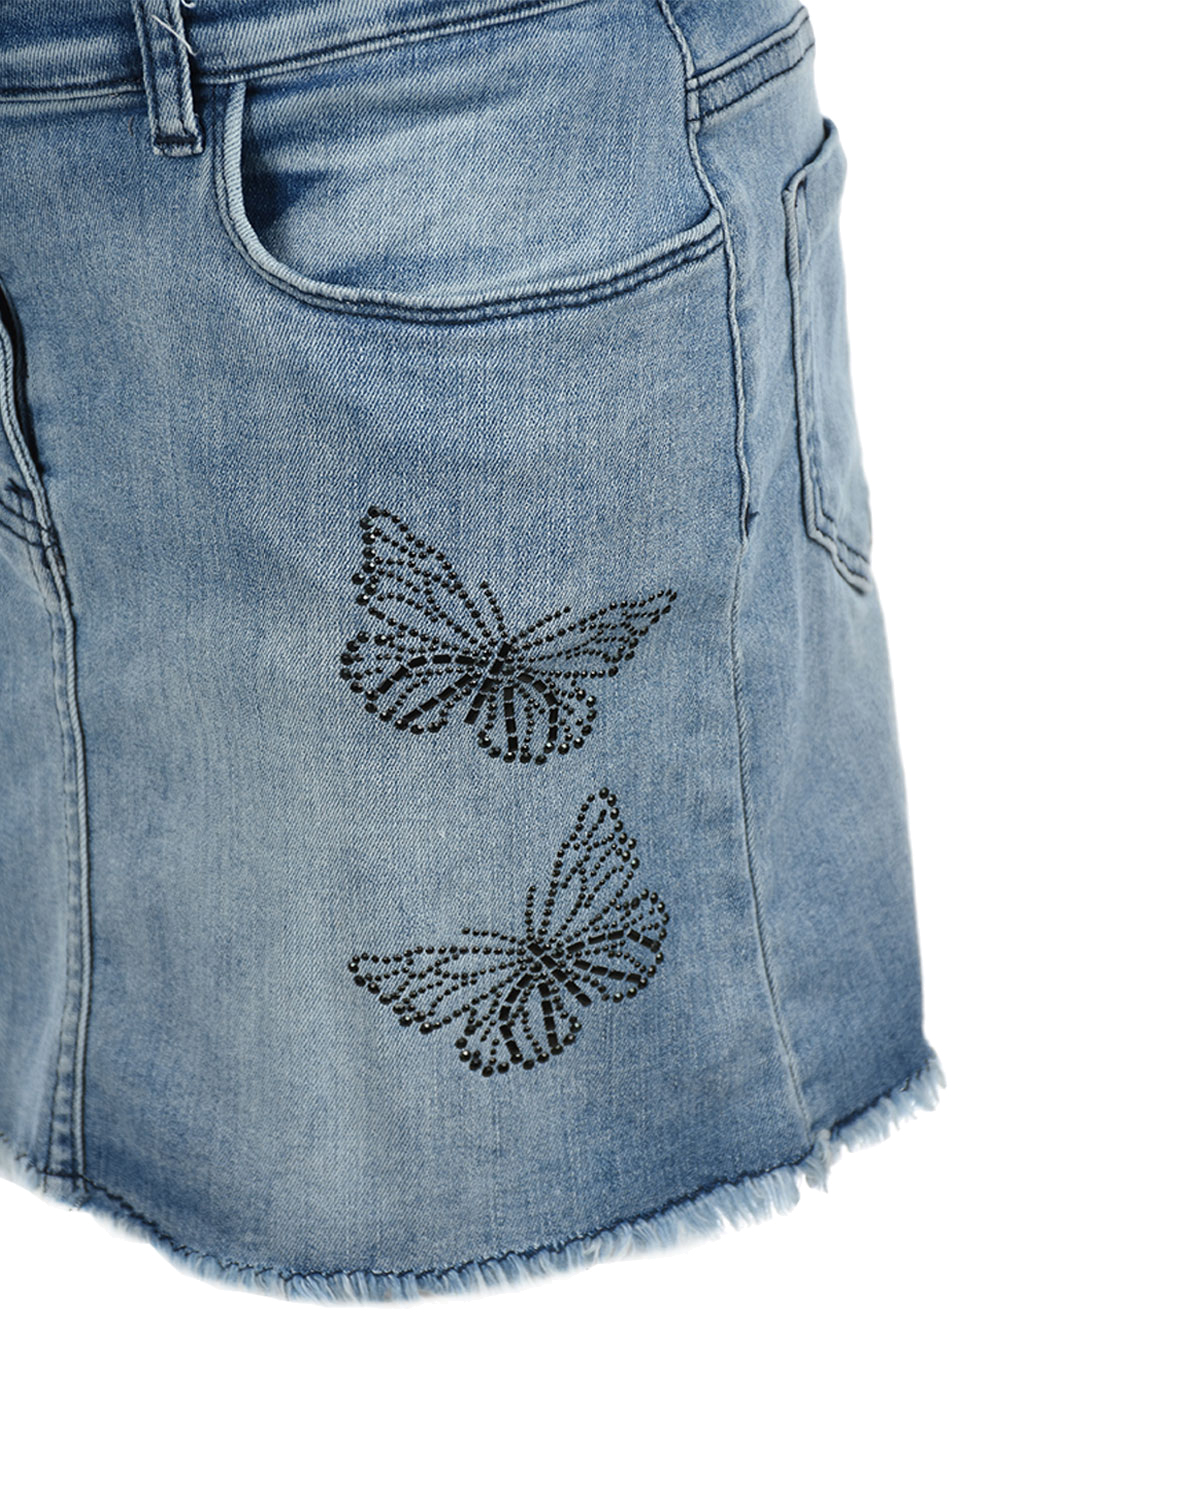 Джинсовая юбка с декором "Бабочки" Monnalisa детская, размер 140, цвет синий - фото 3